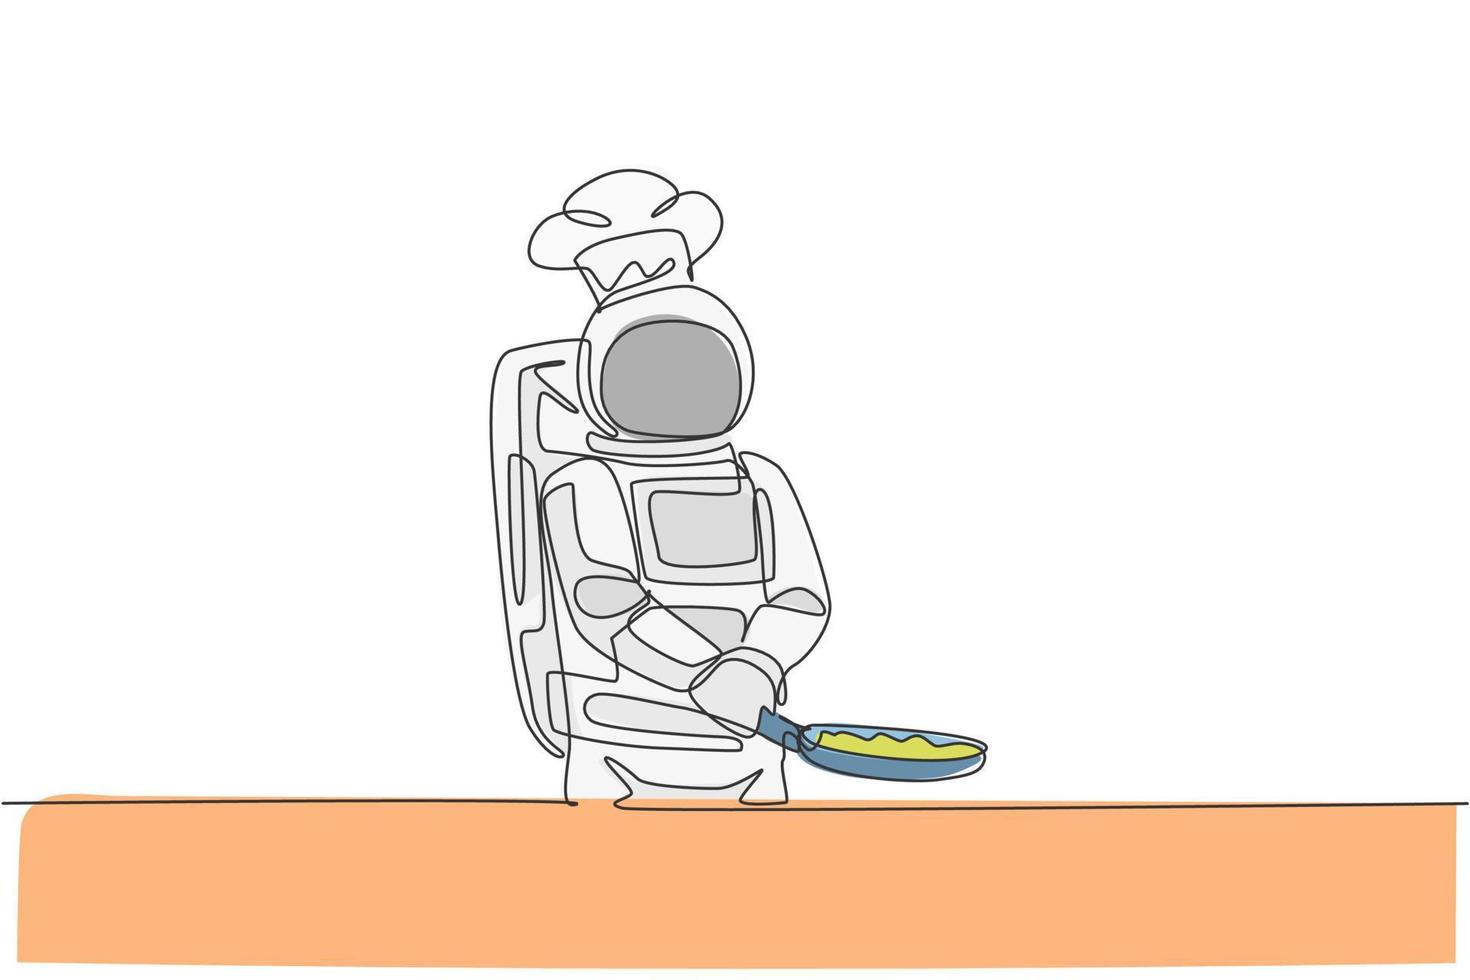 un chef astronaute de dessin au trait continu faisant frire un plat délicieux pour le dîner avec une poêle. menu de cuisine saine sur le concept de restaurant spatial. illustration vectorielle de dessin graphique à une seule ligne dynamique vecteur